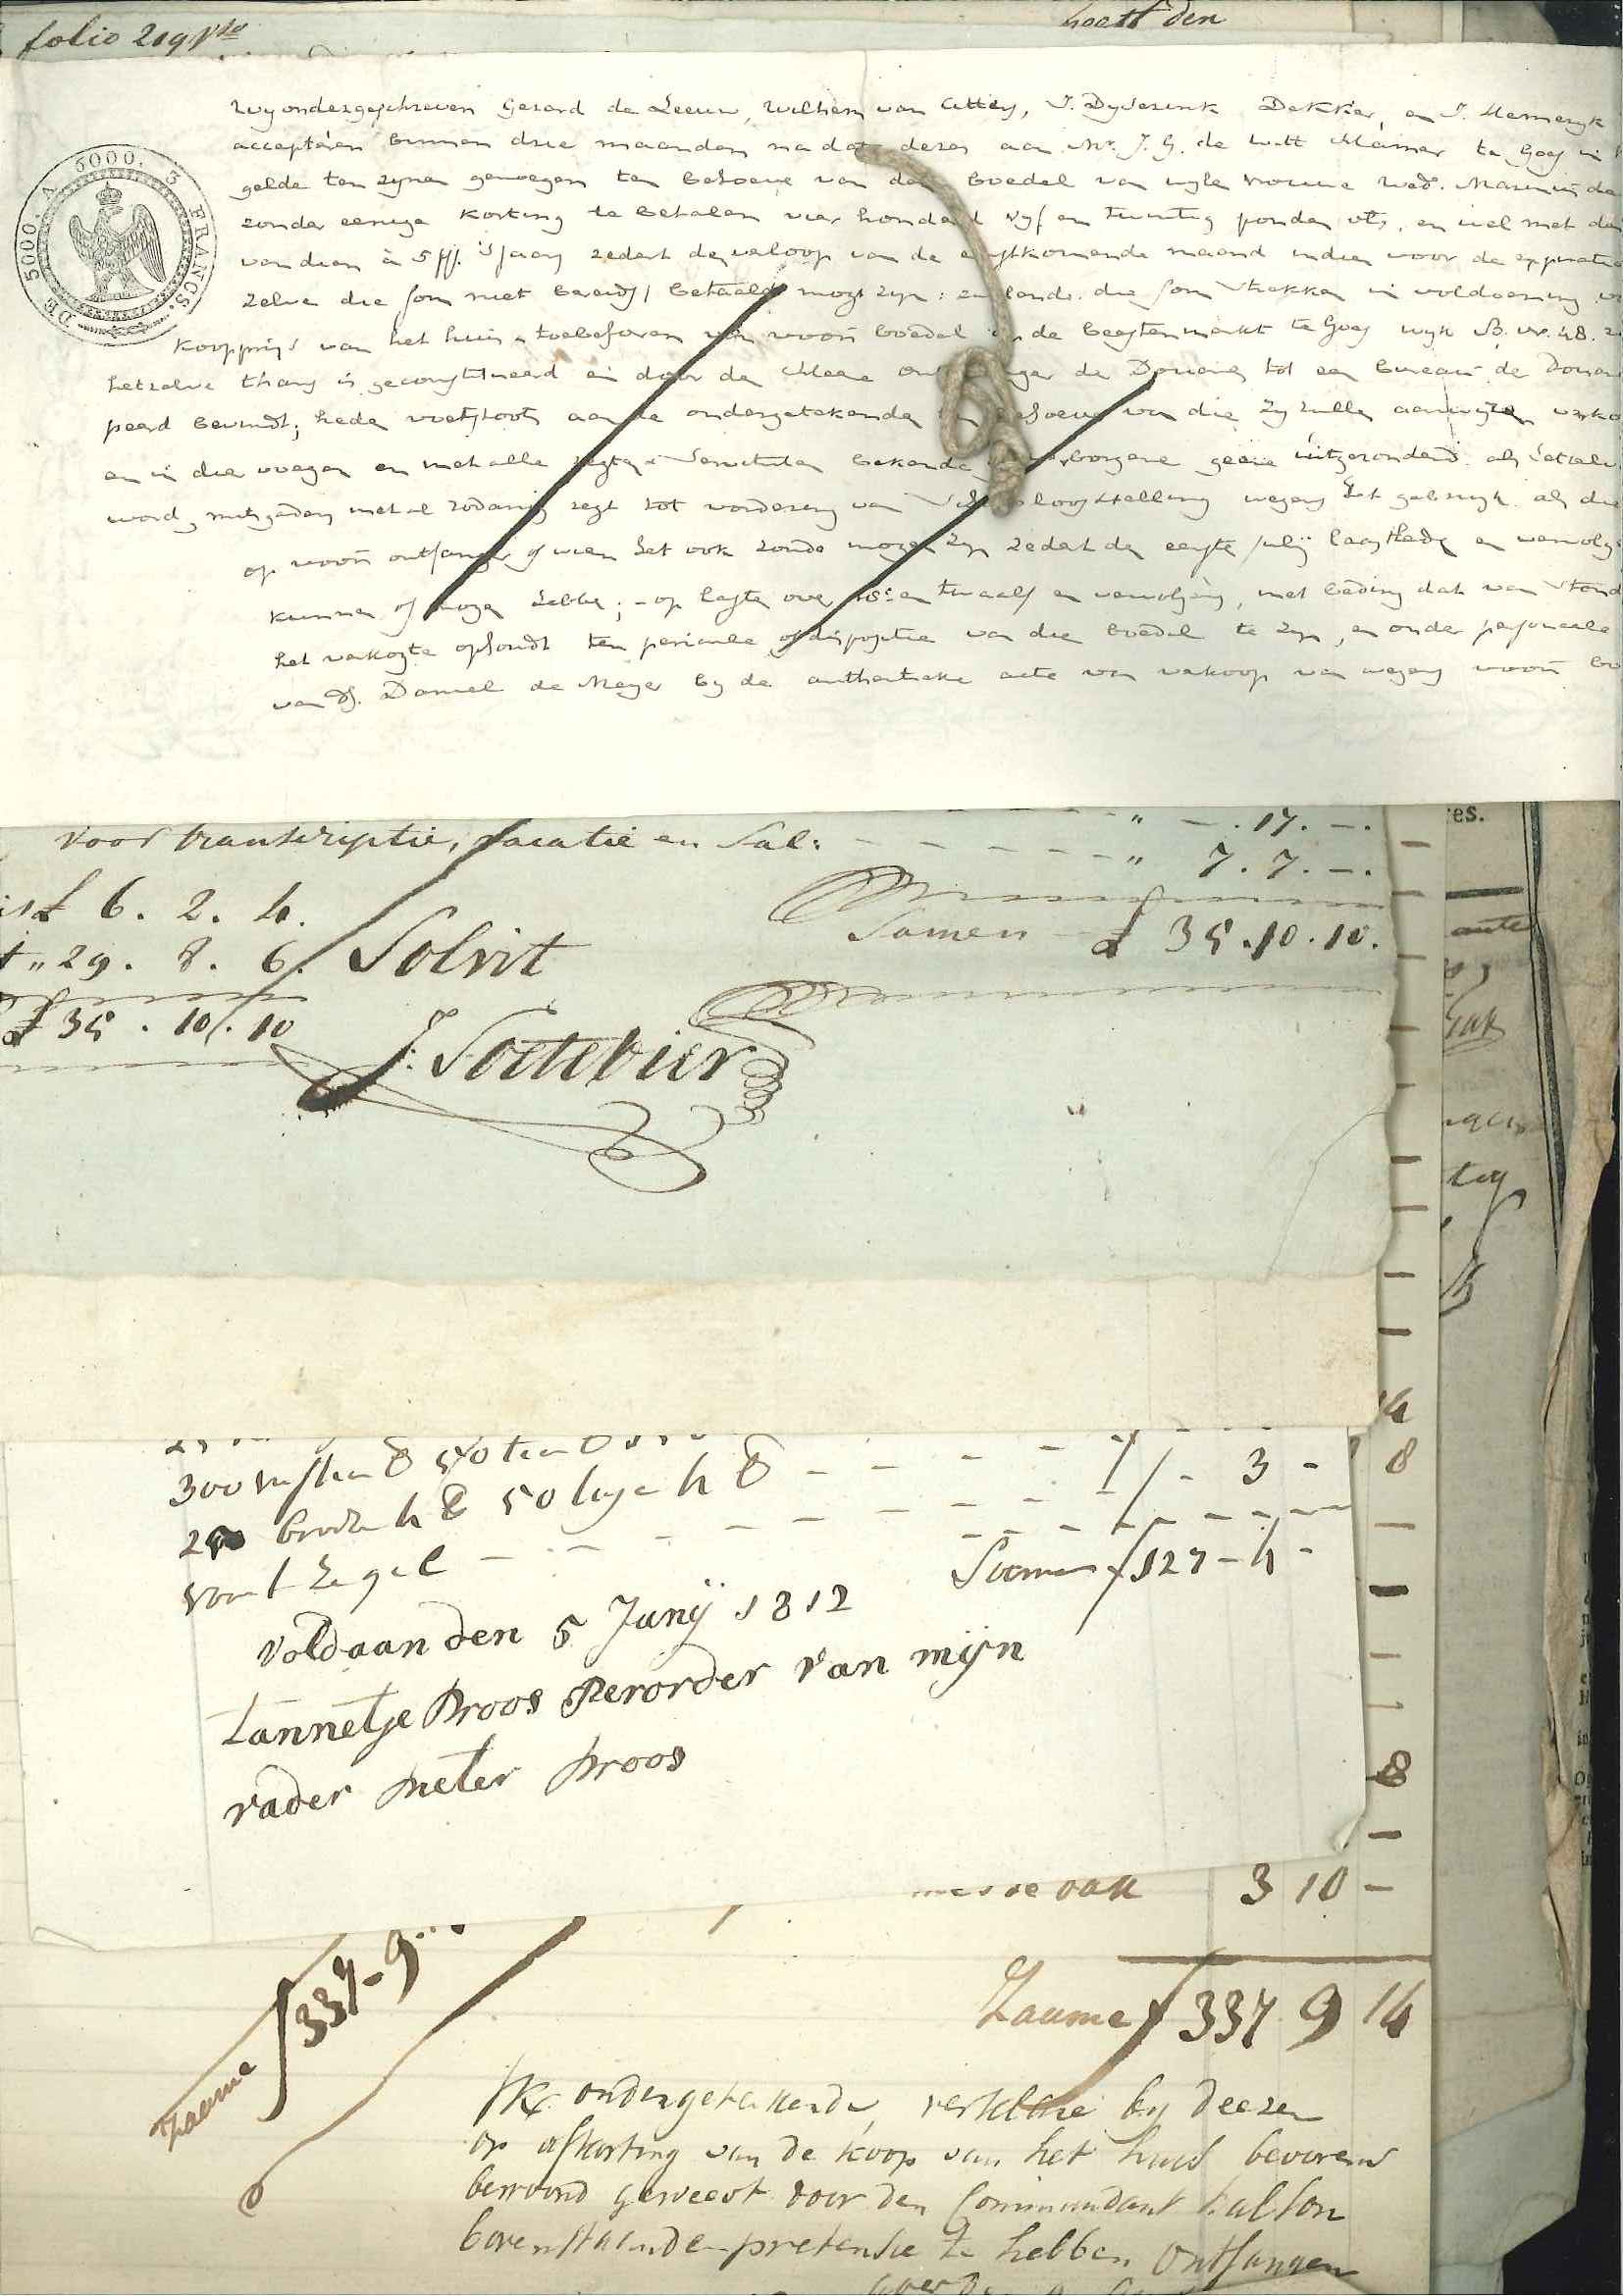 Onkostennota's voor het  fonds voor de inrichting van een huis voor de Franse commandant, 1811.